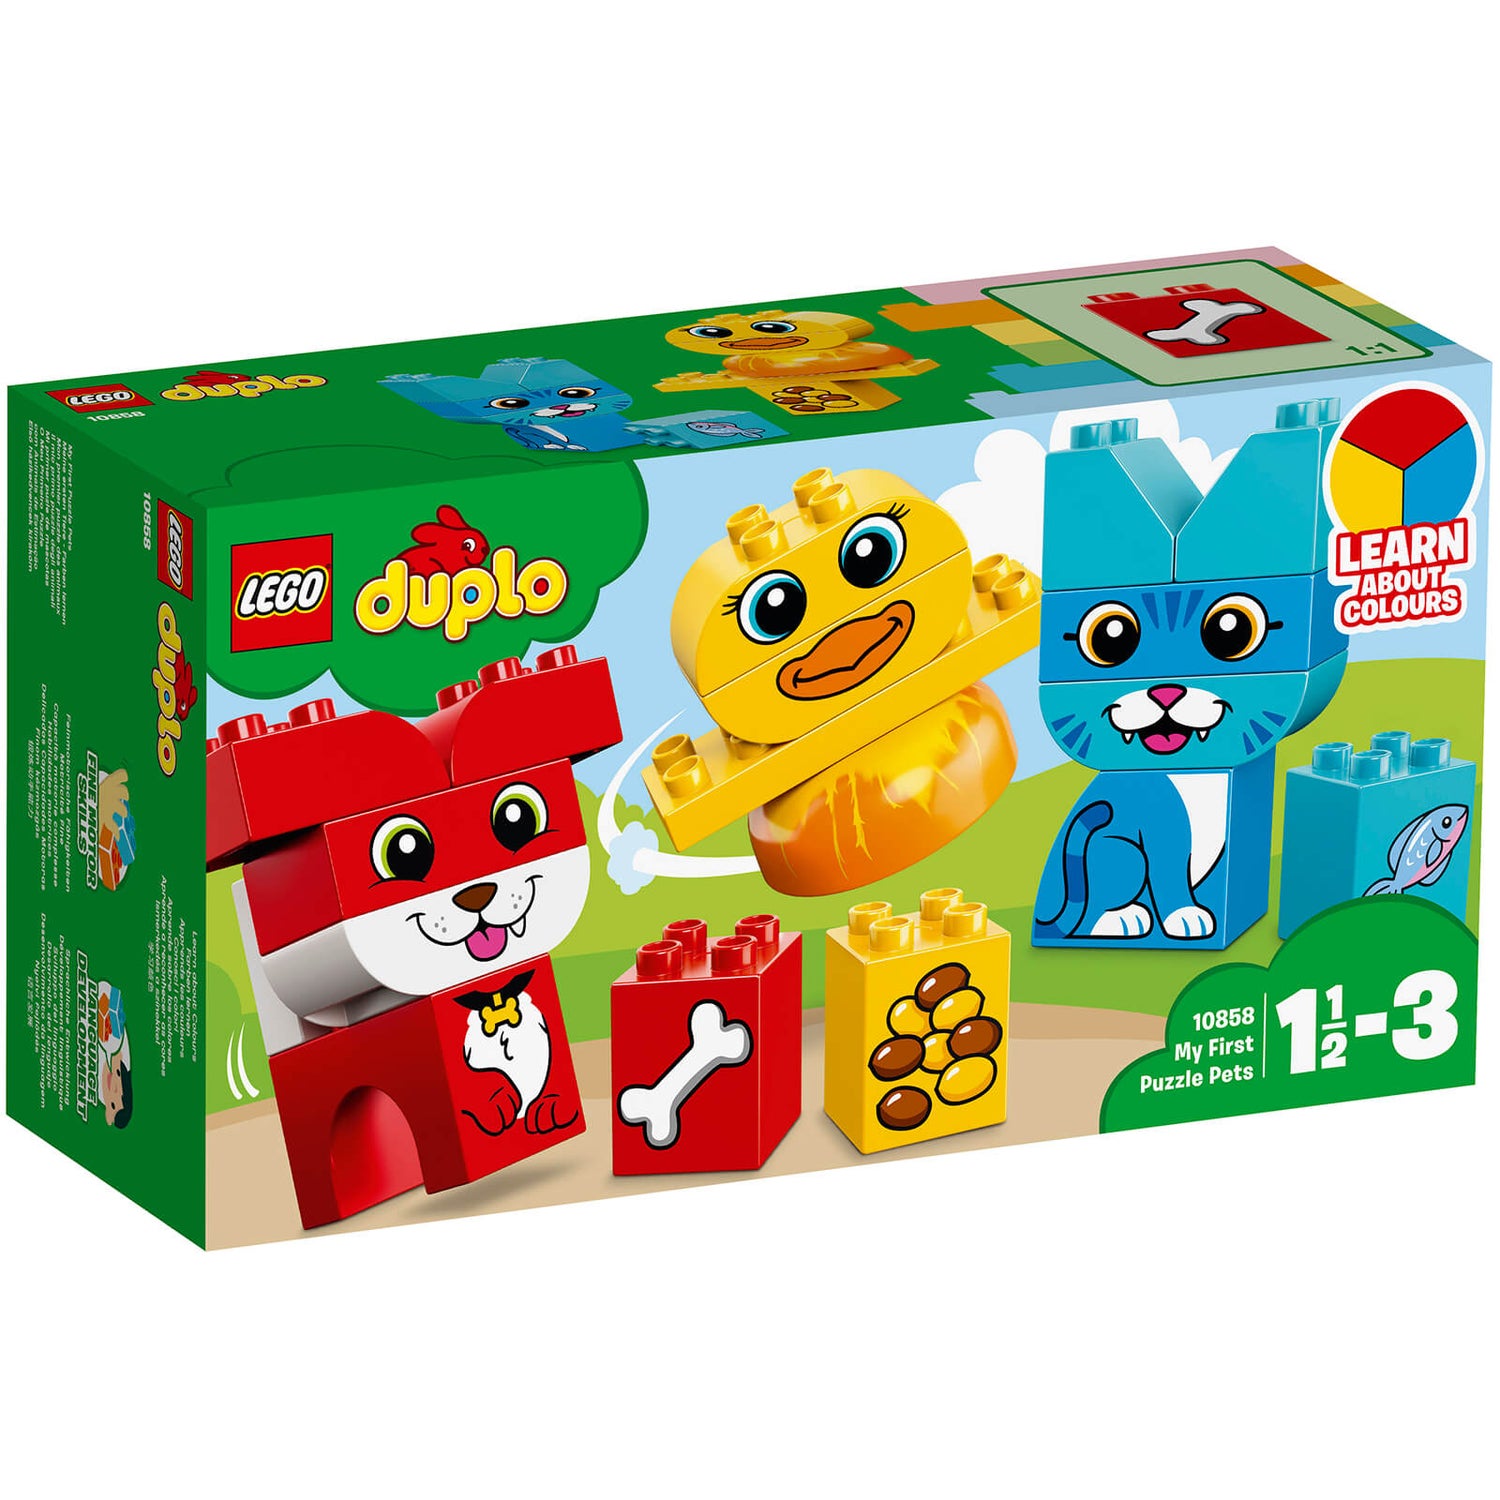 LEGO DUPLO: Mon premier oiseau (10852) Toys